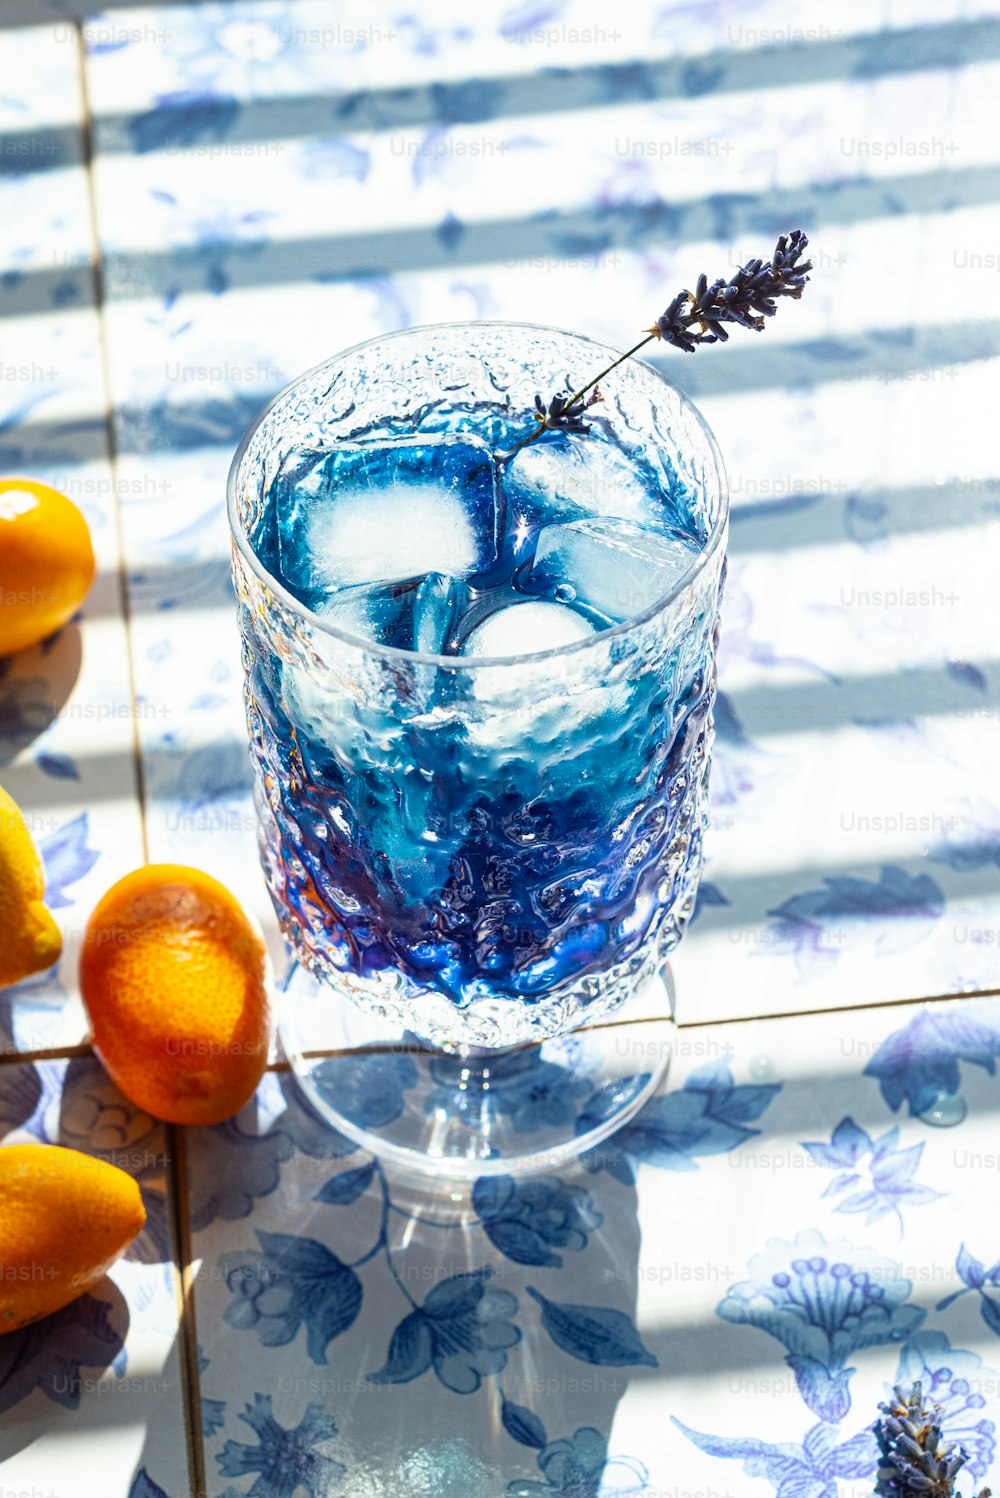 Un vaso lleno de líquido azul junto a naranjas